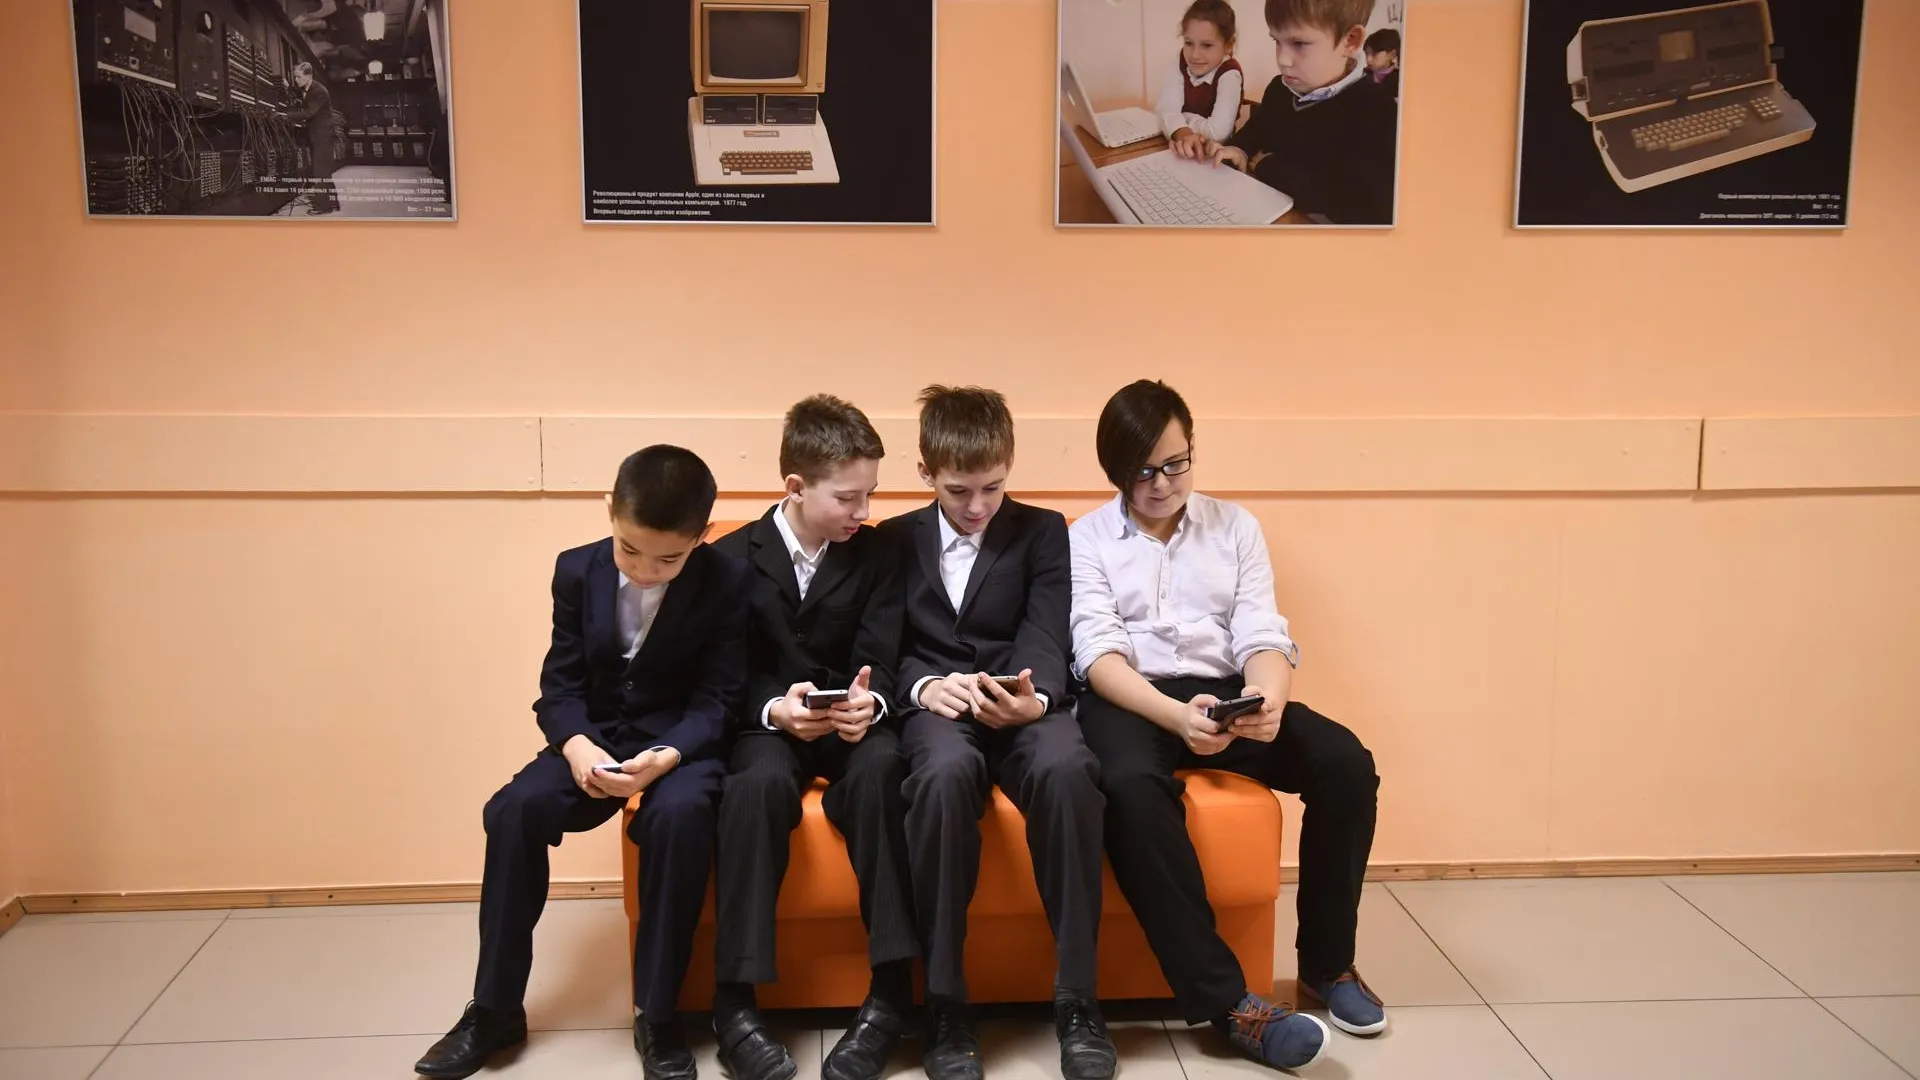 Ученики во время перемены в московской школе. Фото: Komsomolskaya Pravda